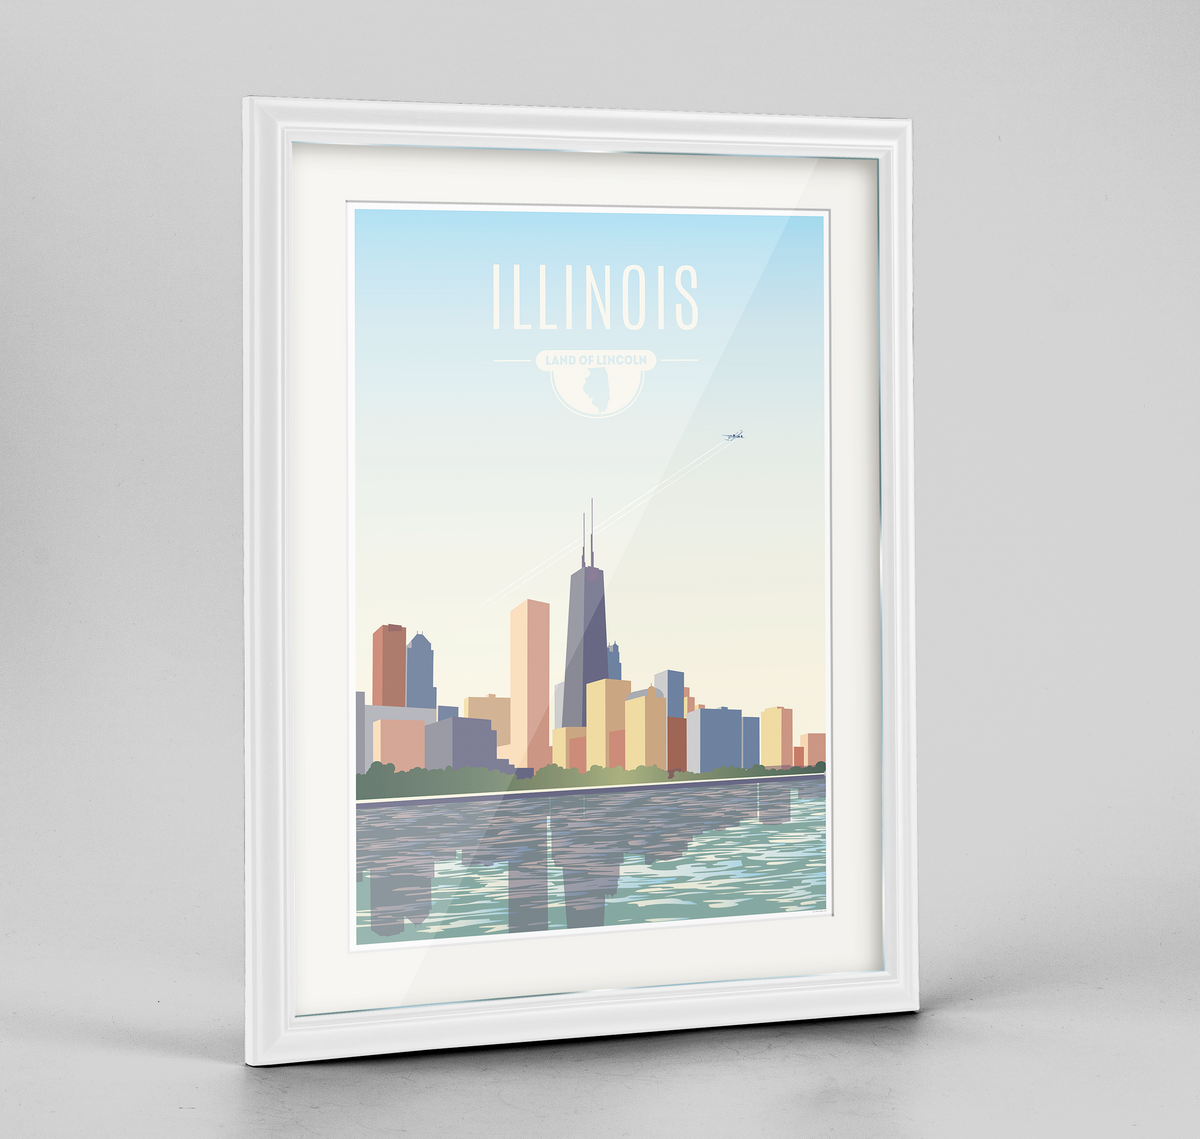 Illinois State Frame Print